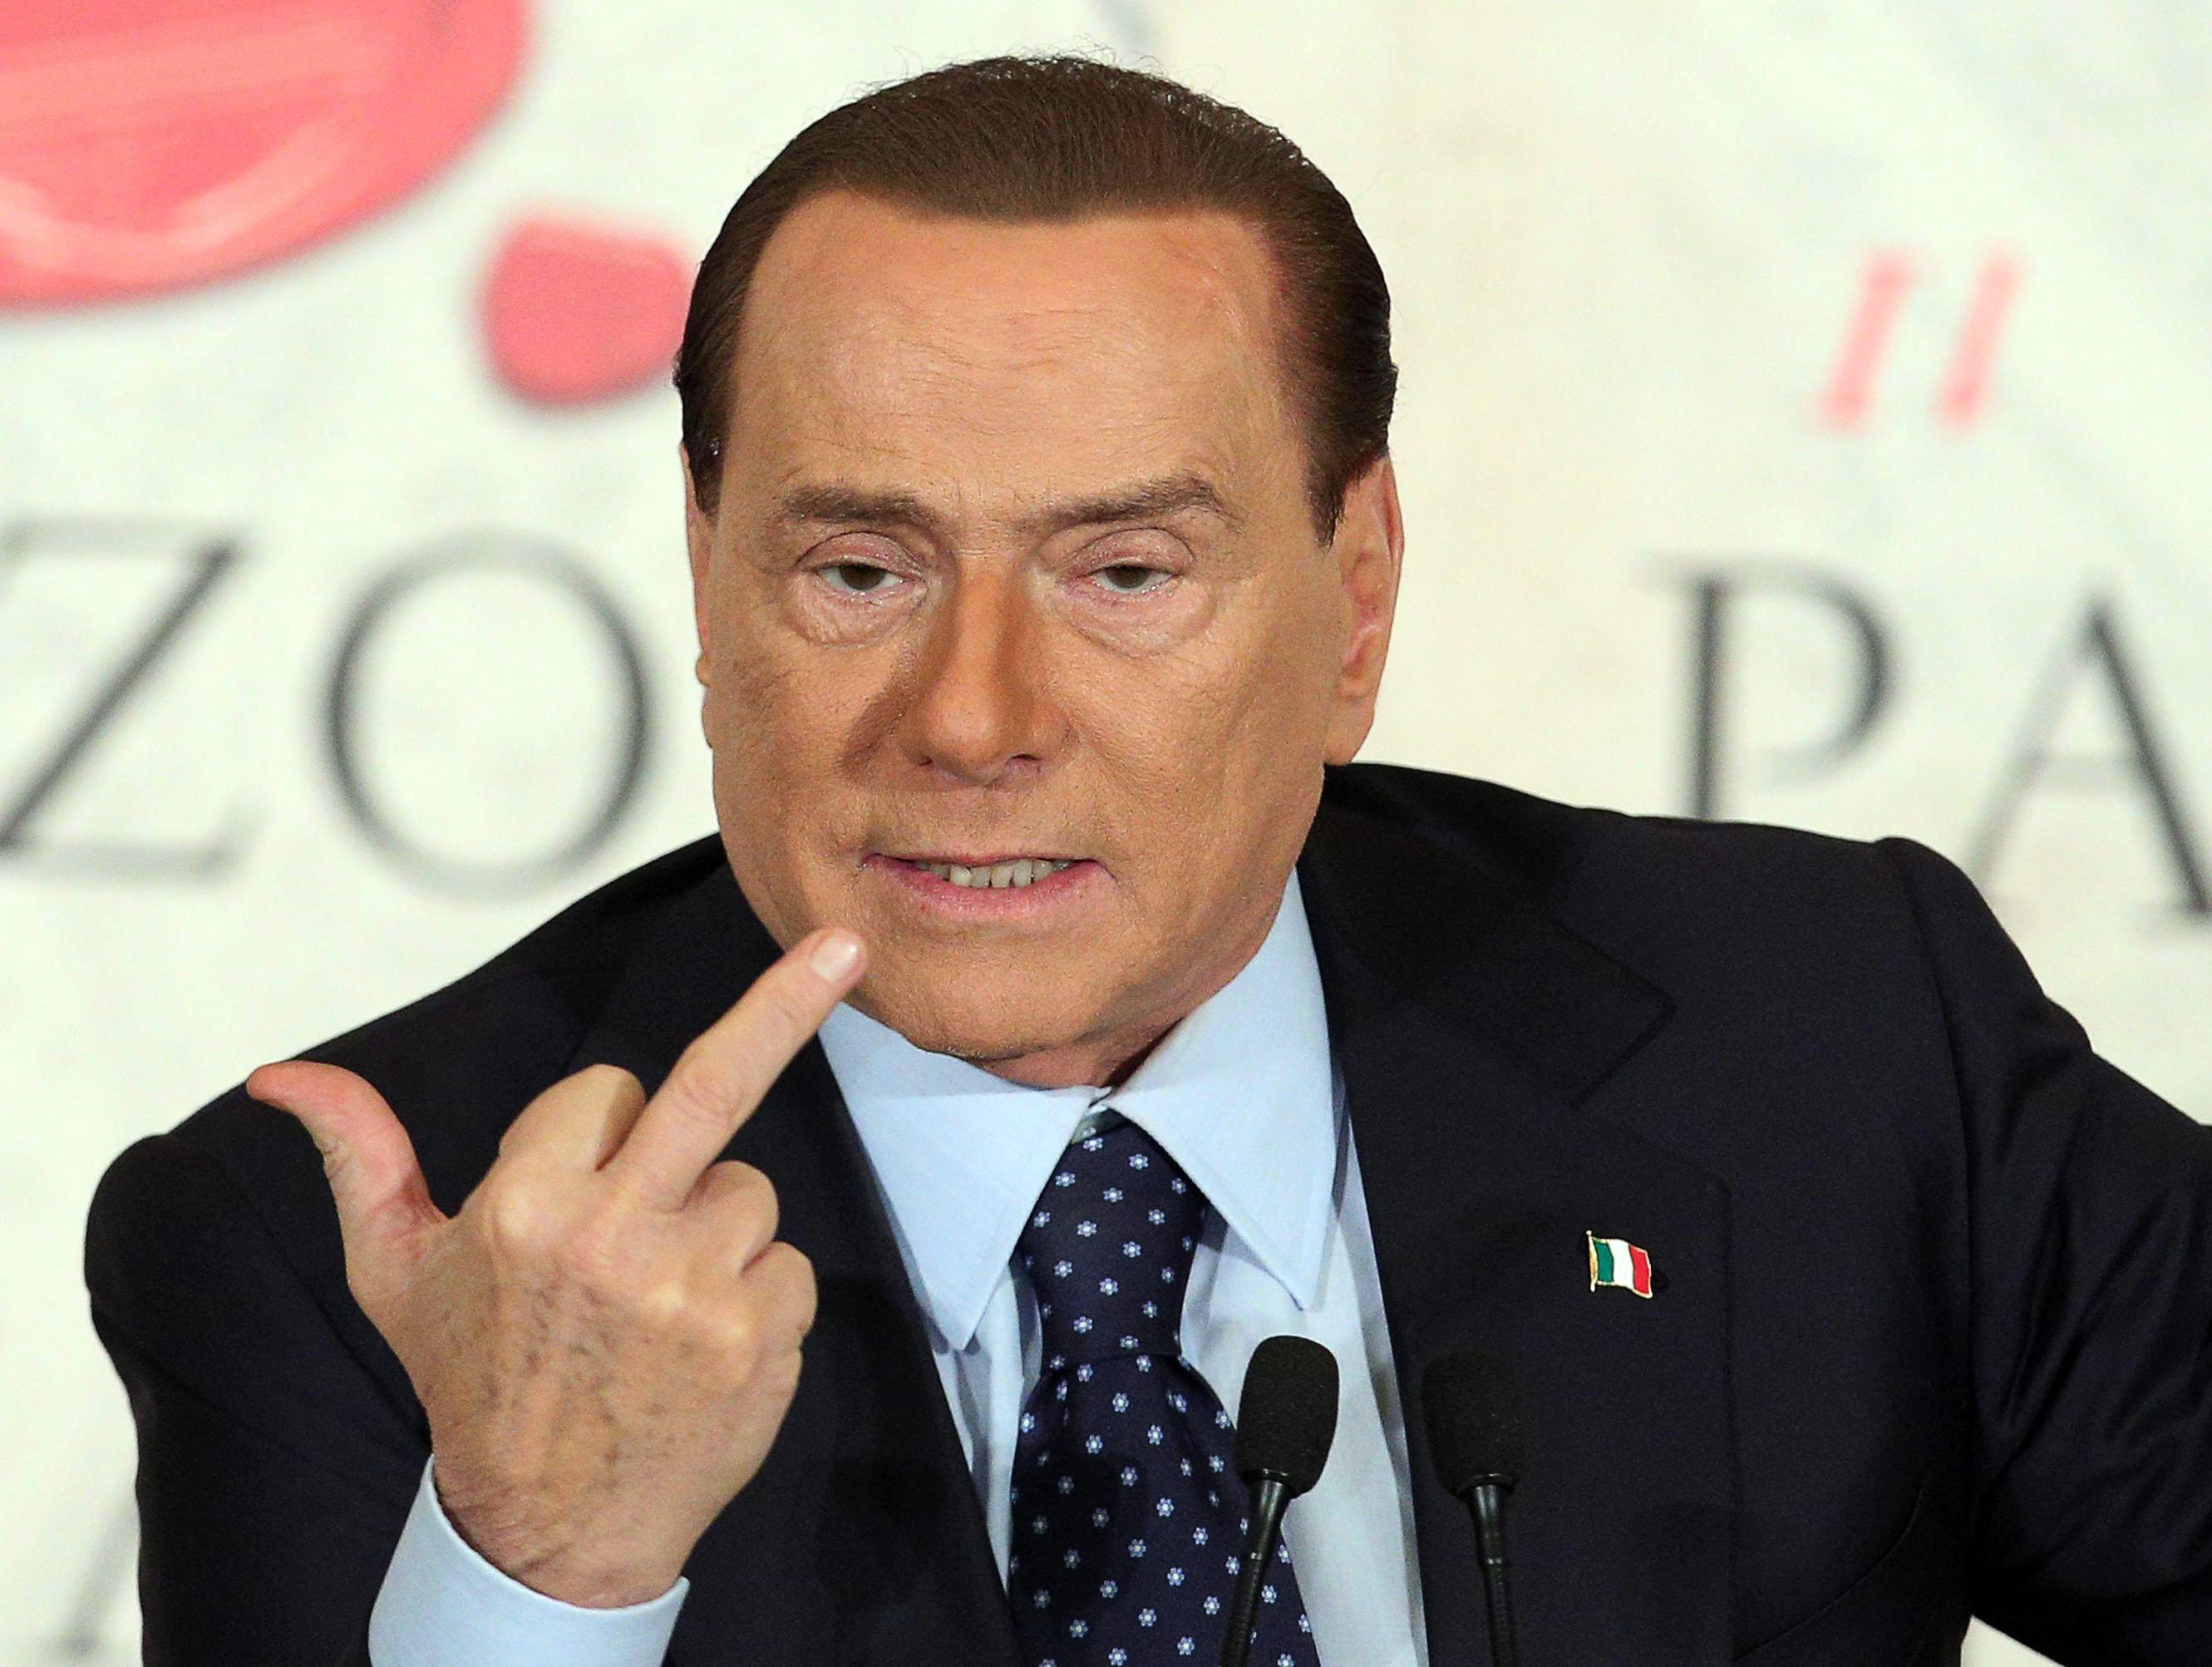 Silvio Berlusconi gaat woensdag in gesprek over de gedeeltelijke verkoop van voetbalclub AC Milan, waarvan hij de eigenaar is. Dat meldt een bron uit de omgeving van de Italiaanse ex-premier. Onderhandelingspartner van Berlusconi is de Thaise zakenman Bee Taechaubol, over wie in februari al werd gemeld dat hij een bod van 1 miljard euro had uitgebracht op de Serie A-club. Volgens de bron is het overleg 'heel belangrijk', maar worden er nog geen knopen doorgehakt. Het Italiaanse financiële dagblad Sole 24 Ore schreef woensdag dat Taechaubol nu van plan is een bod van 500 miljoen euro uit te brengen op AC Milan. De Thai zou in ruil voor dat bedrag voor 51 procent eigenaar van de voetbalclub worden. Berlusconi sleutelt aan imperium Het is goed mogelijk dat Berlusconi's besluit om AC Milan voor een deel te verkopen, te maken heeft met de moeilijke periode waarin de club zich momenteel bevindt. De Rossoneri hebben een schuld van 250 miljoen euro, en draaiden in 2014 ruim 90 miljoen euro verlies. Ook sportief gaat het de Milanezen met een tiende plaats in de competitie, ruim buiten het bereik van plaatsing voor Europees voetbal, niet voor de wind. De verkoop van AC Milan is onderdeel van Berlusconi's plan om te schuiven met de activiteiten van zijn bedrijvenimperium Fininvest. De oud-politicus poogt een monopolie te krijgen op zendmasten in Italië, maar Berlusconi wordt daarbij tegengewerkt door de Italiaanse politiek.